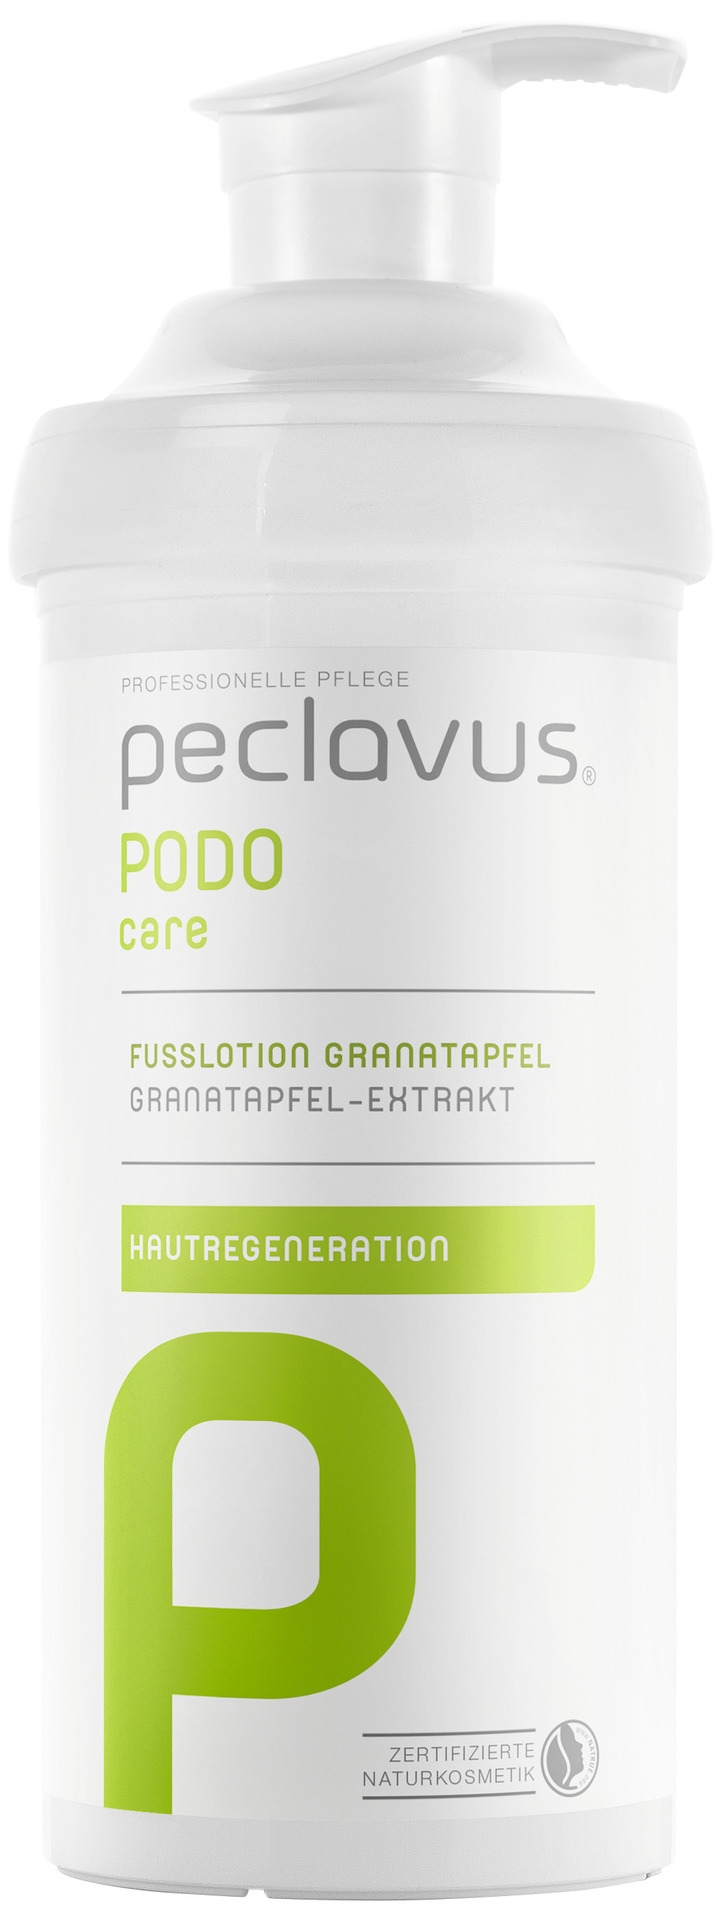 Peclavus PODOcare Fußlotion Granatapfel | 500 ml